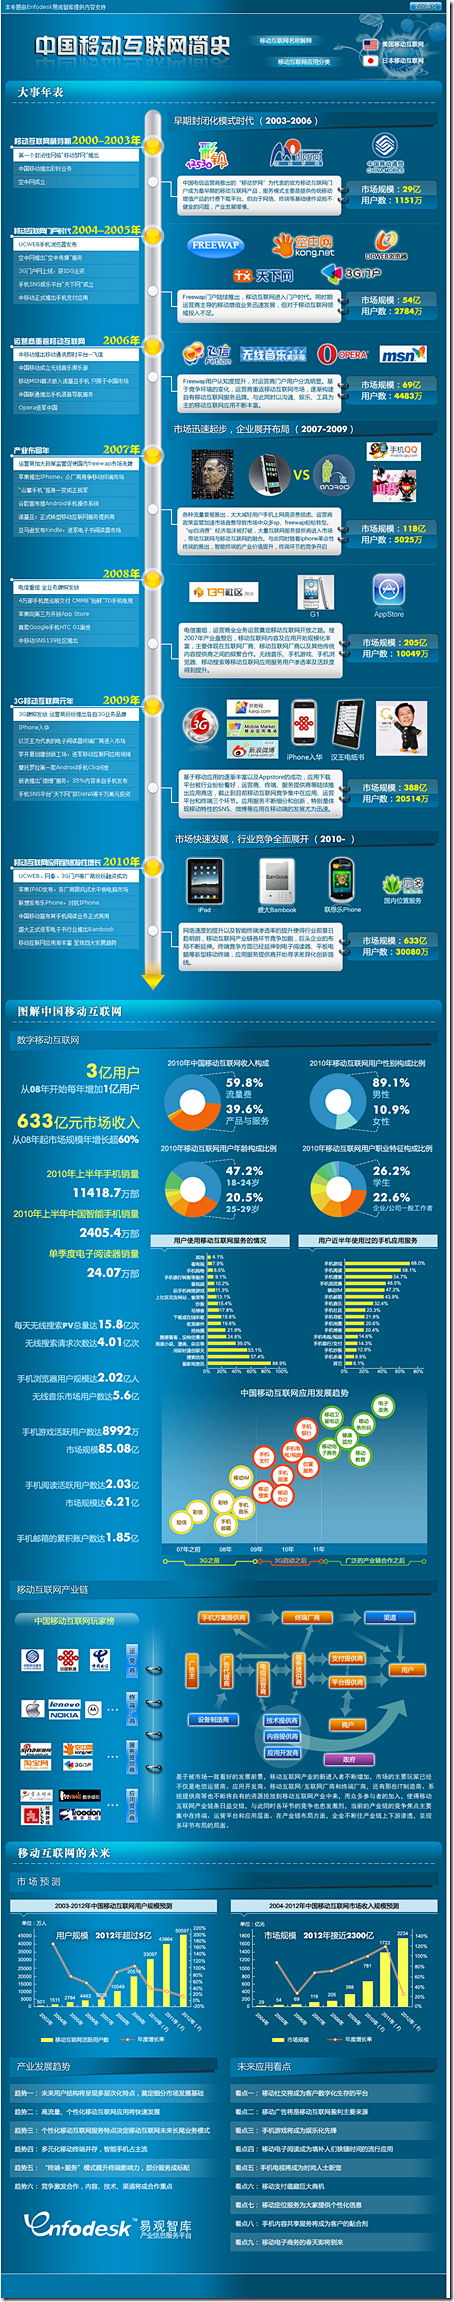 中国移动互联网简史